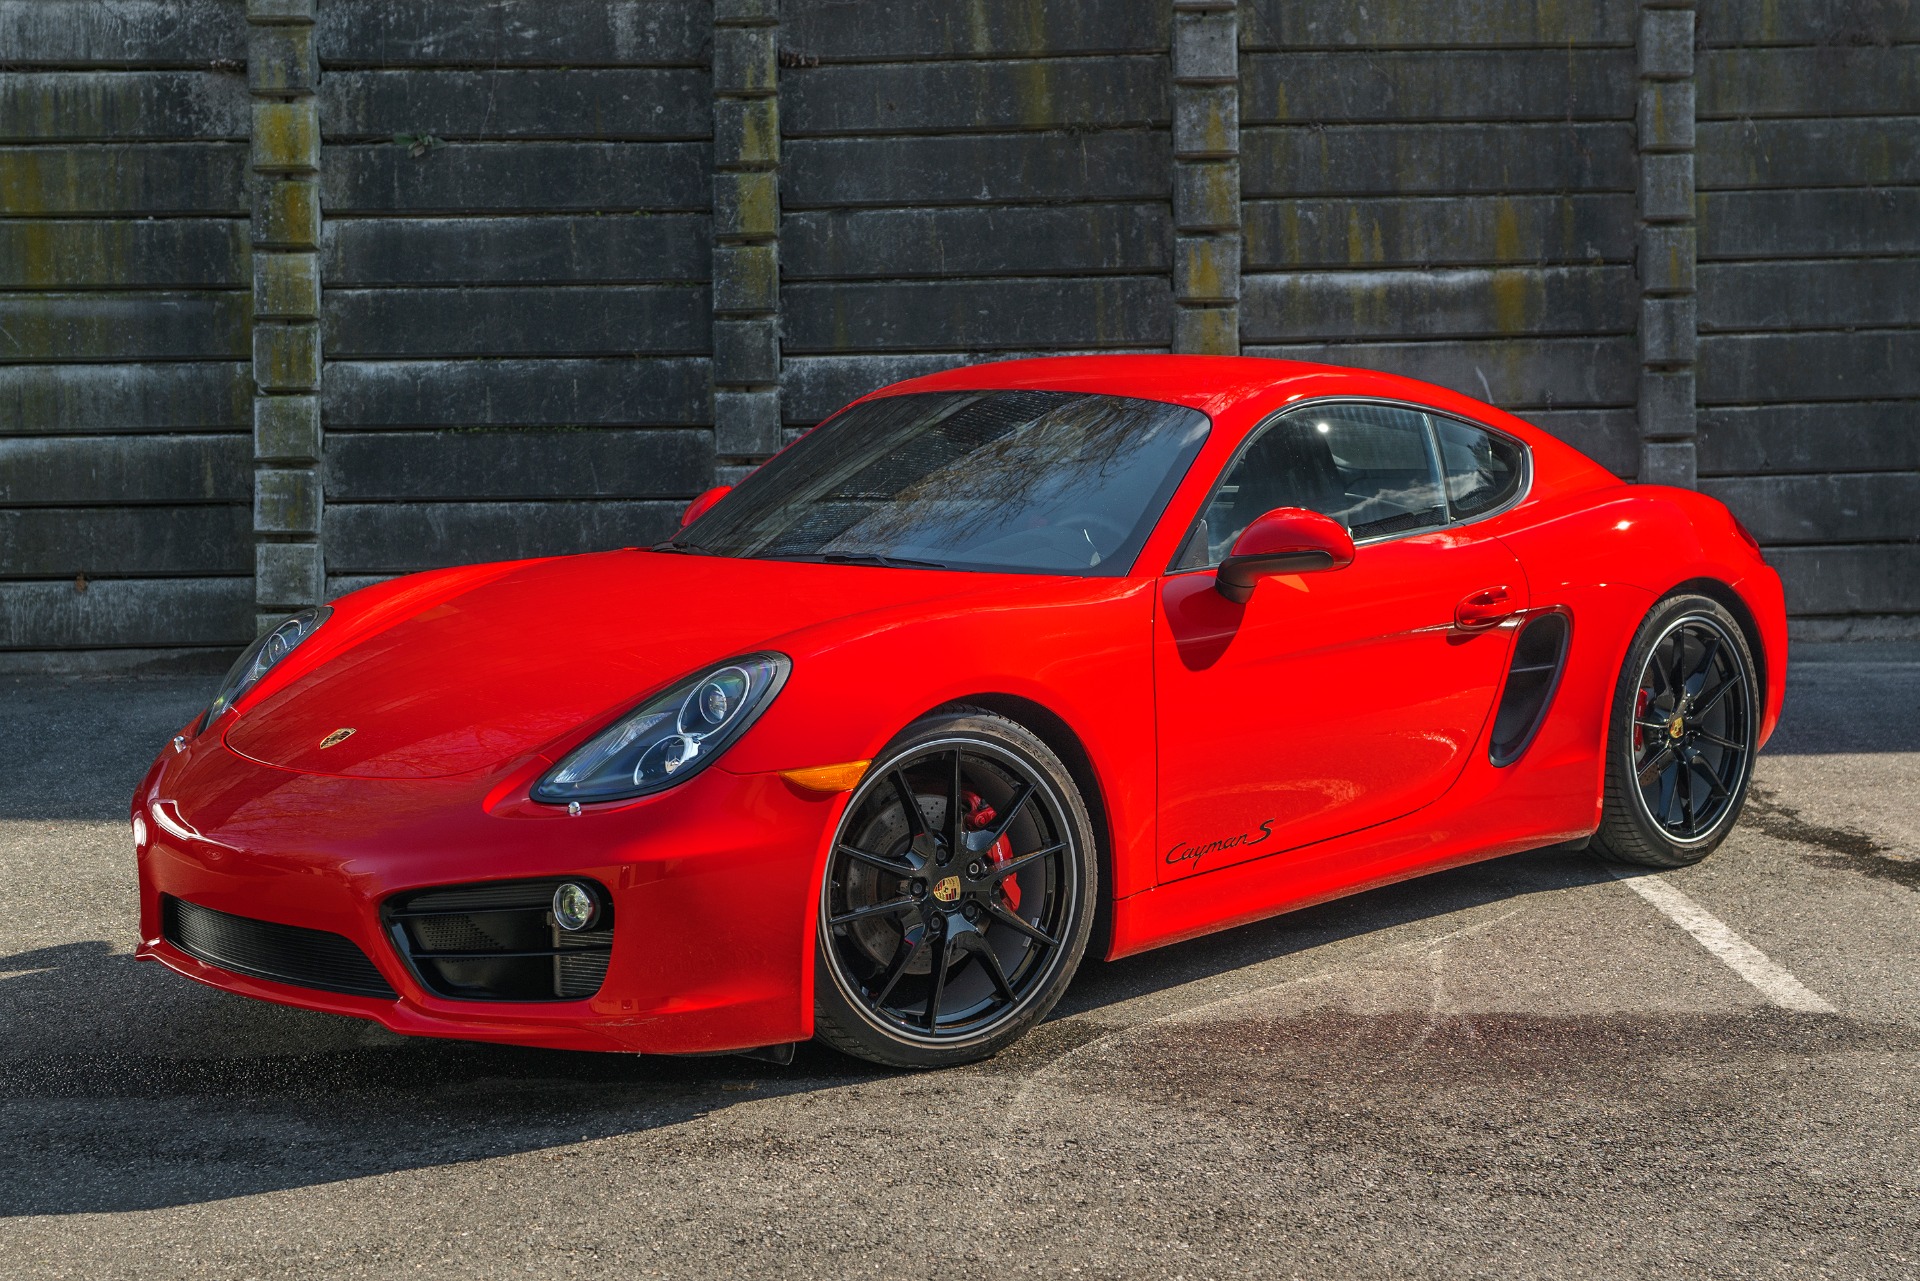 2015 Porsche Cayman S Stock # 1495 for sale near Oyster Bay, NY | NY ...